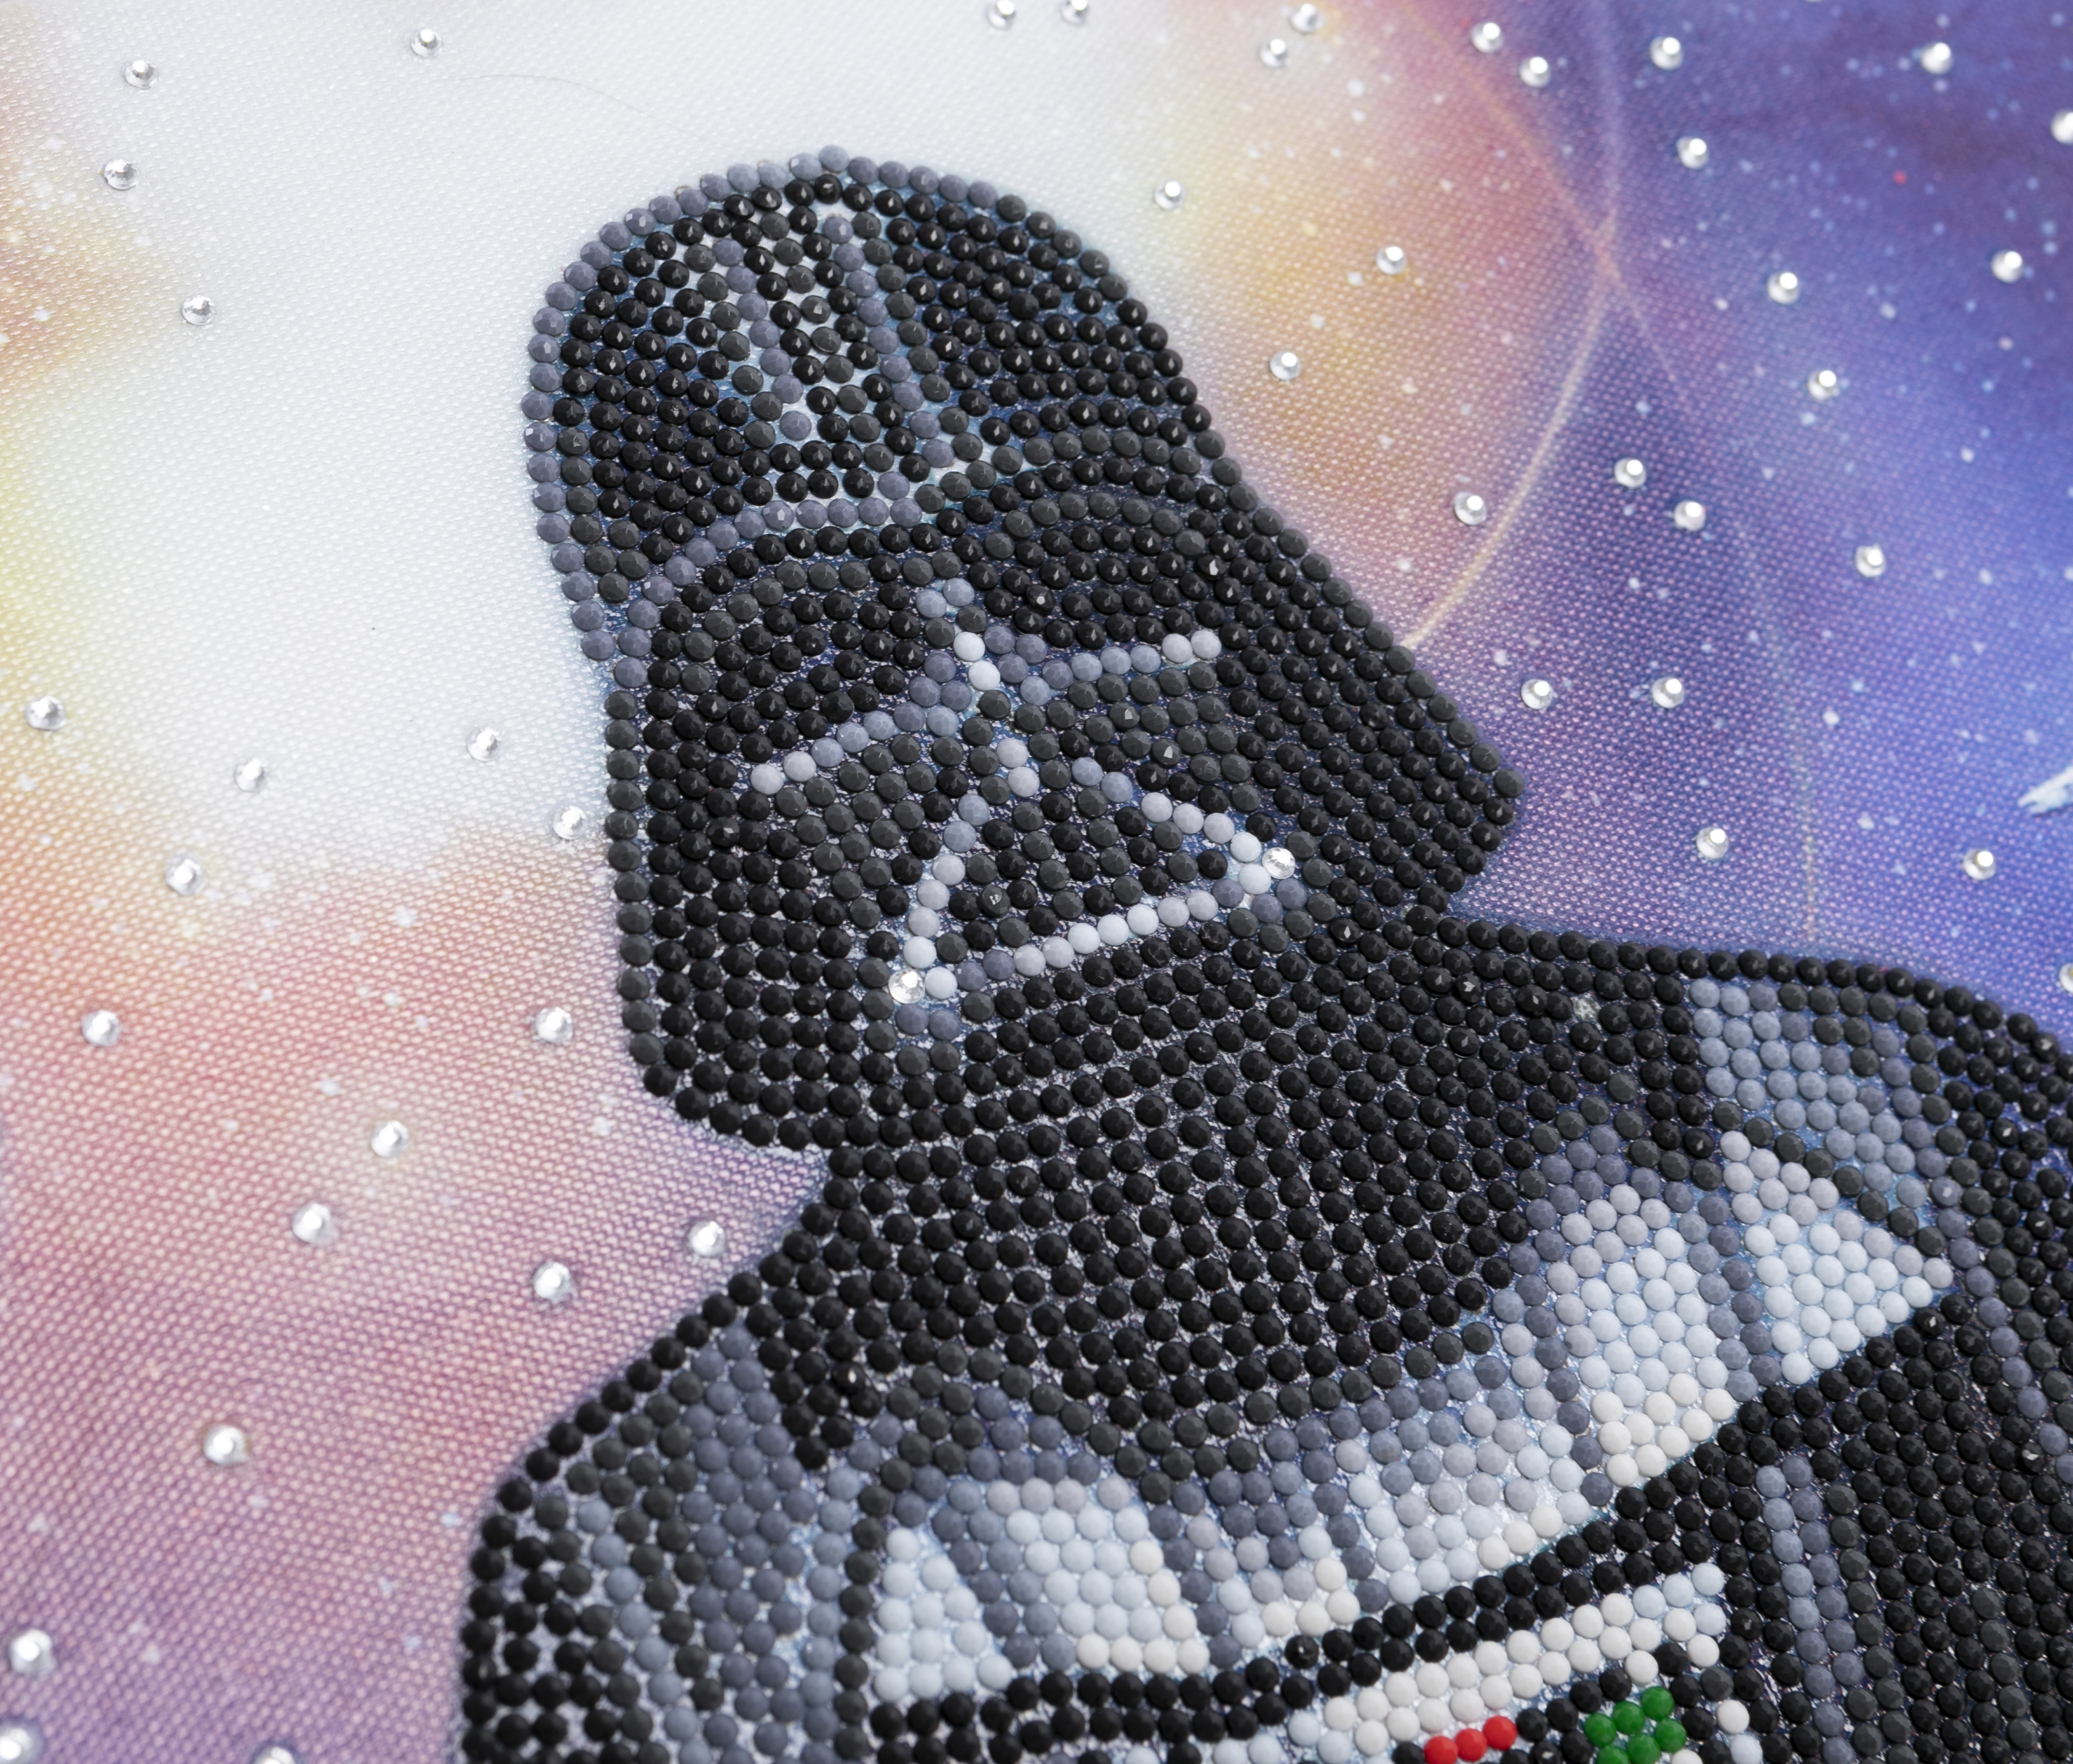 Obraz Darth Vader Star Wars (30x30 cm) vykladanie z diamantov